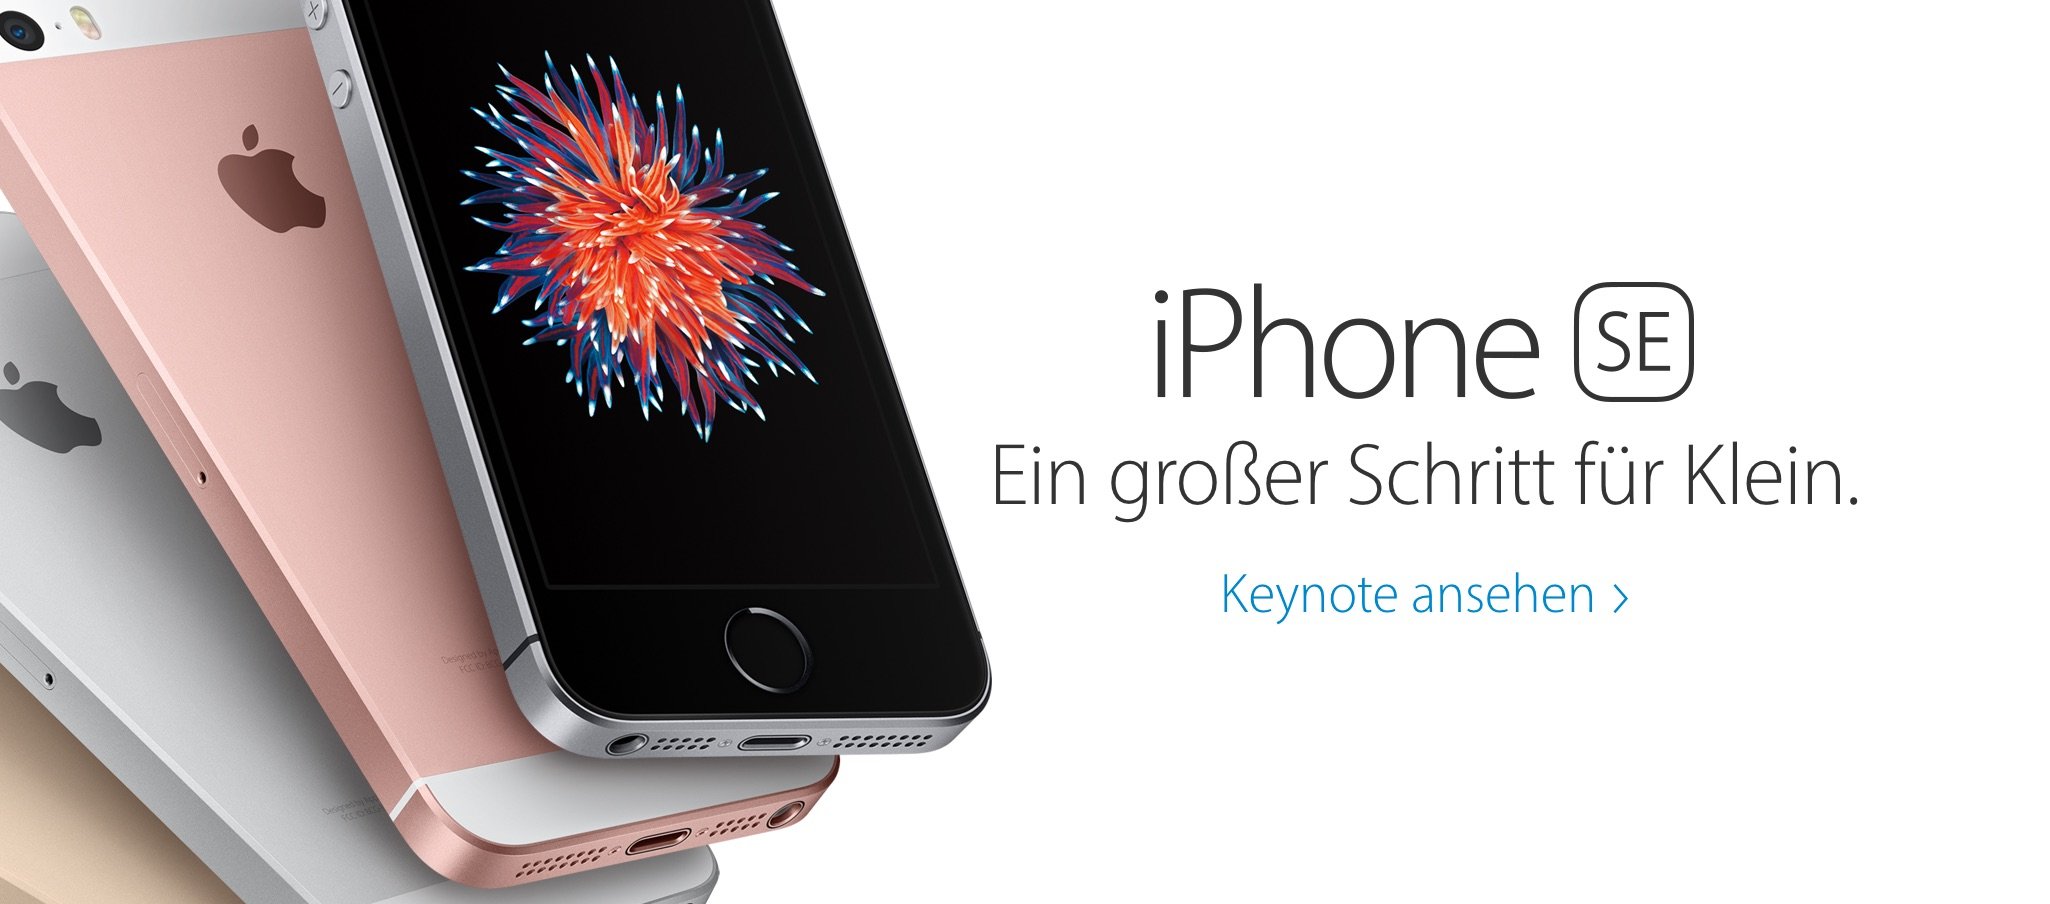 Euro Preise Deutschland für iPhone SE, iPad Pro, Apple Watch 5